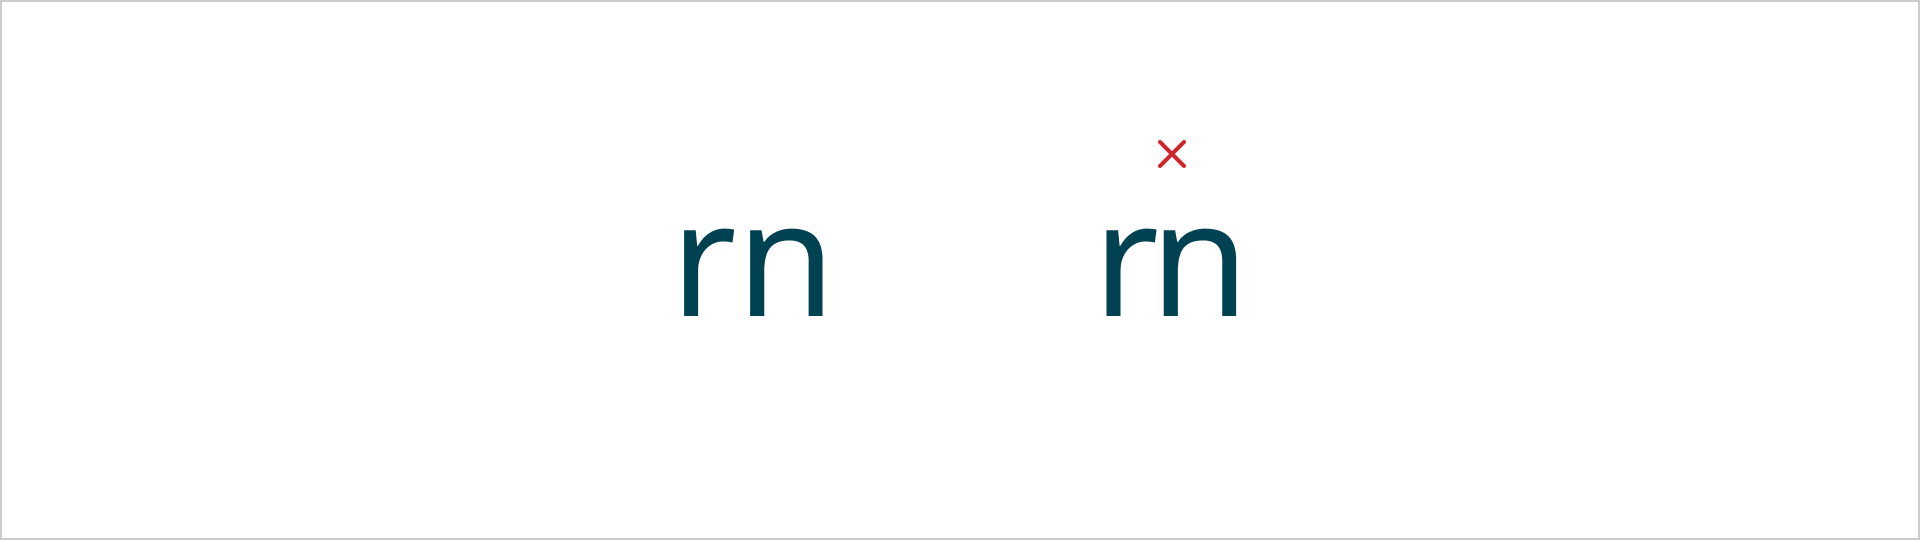 De letters 'r' en 'n' zijn twee keer afgebeeld. Bij heeft eerste voorbeeld is er voldoende letter afstand. Bij het tweede voorbeeld is er te weinig letter afstand. Bij het tweede voorbeeld staat een rood kruis.